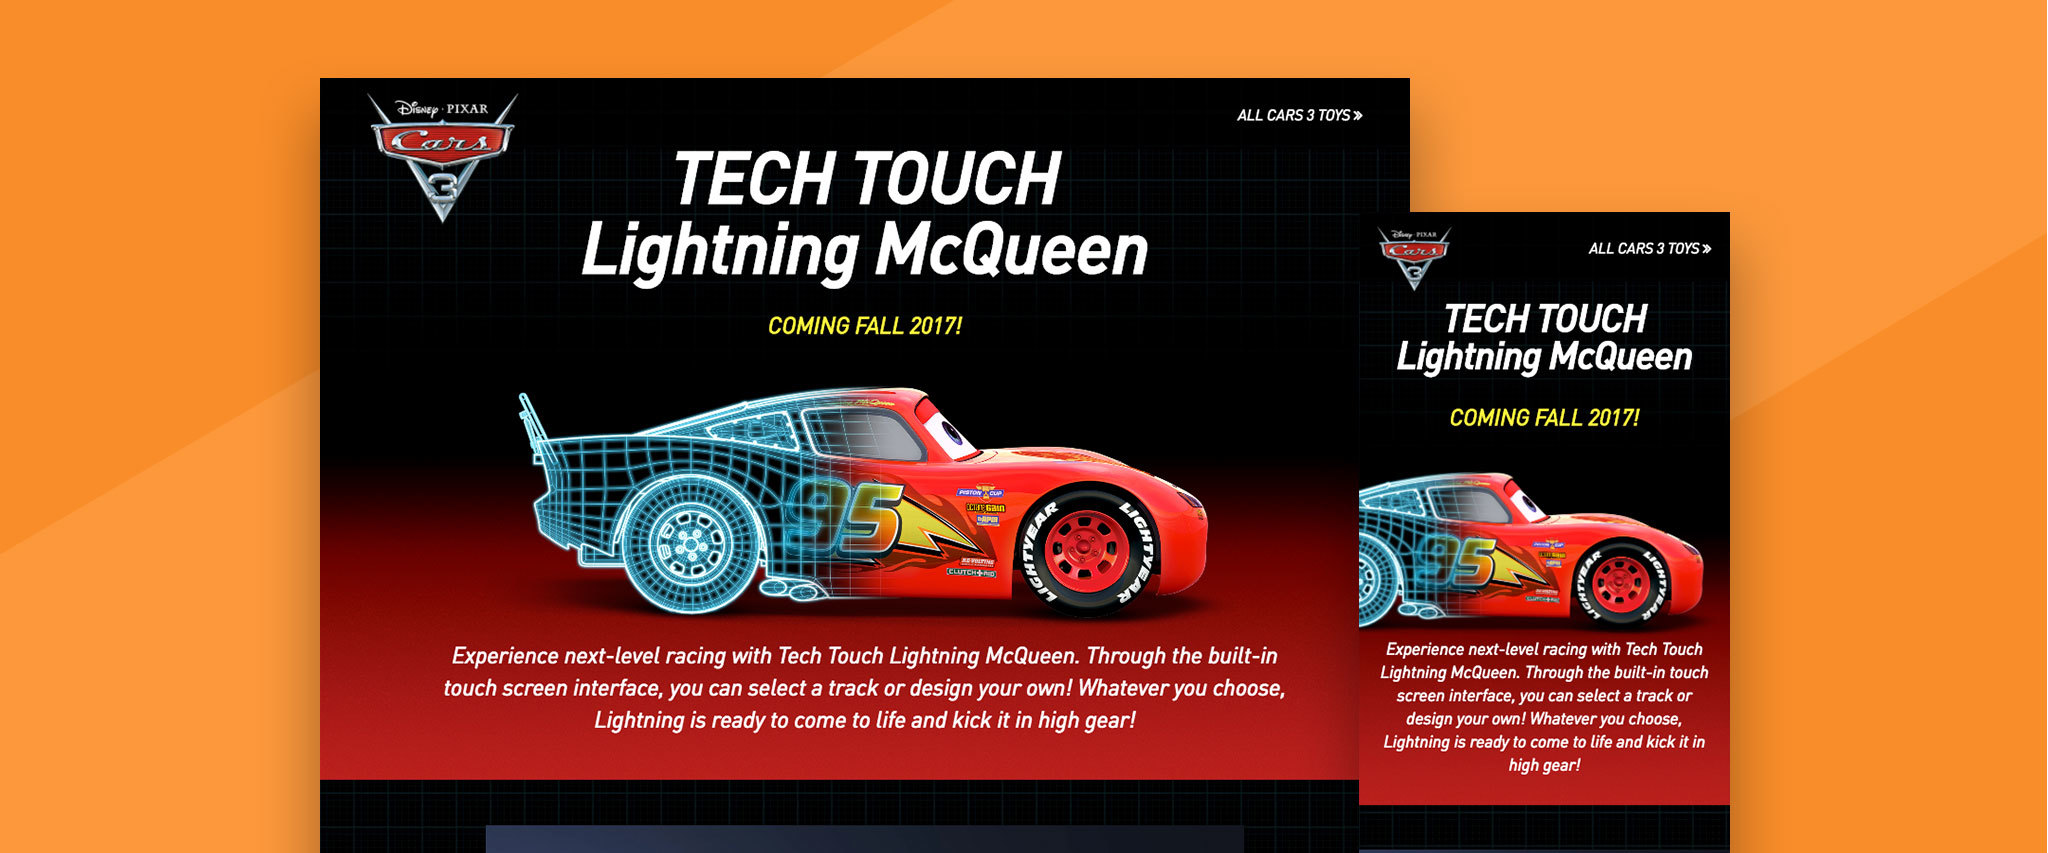 Tech Touch Lightning McQueen Gallery